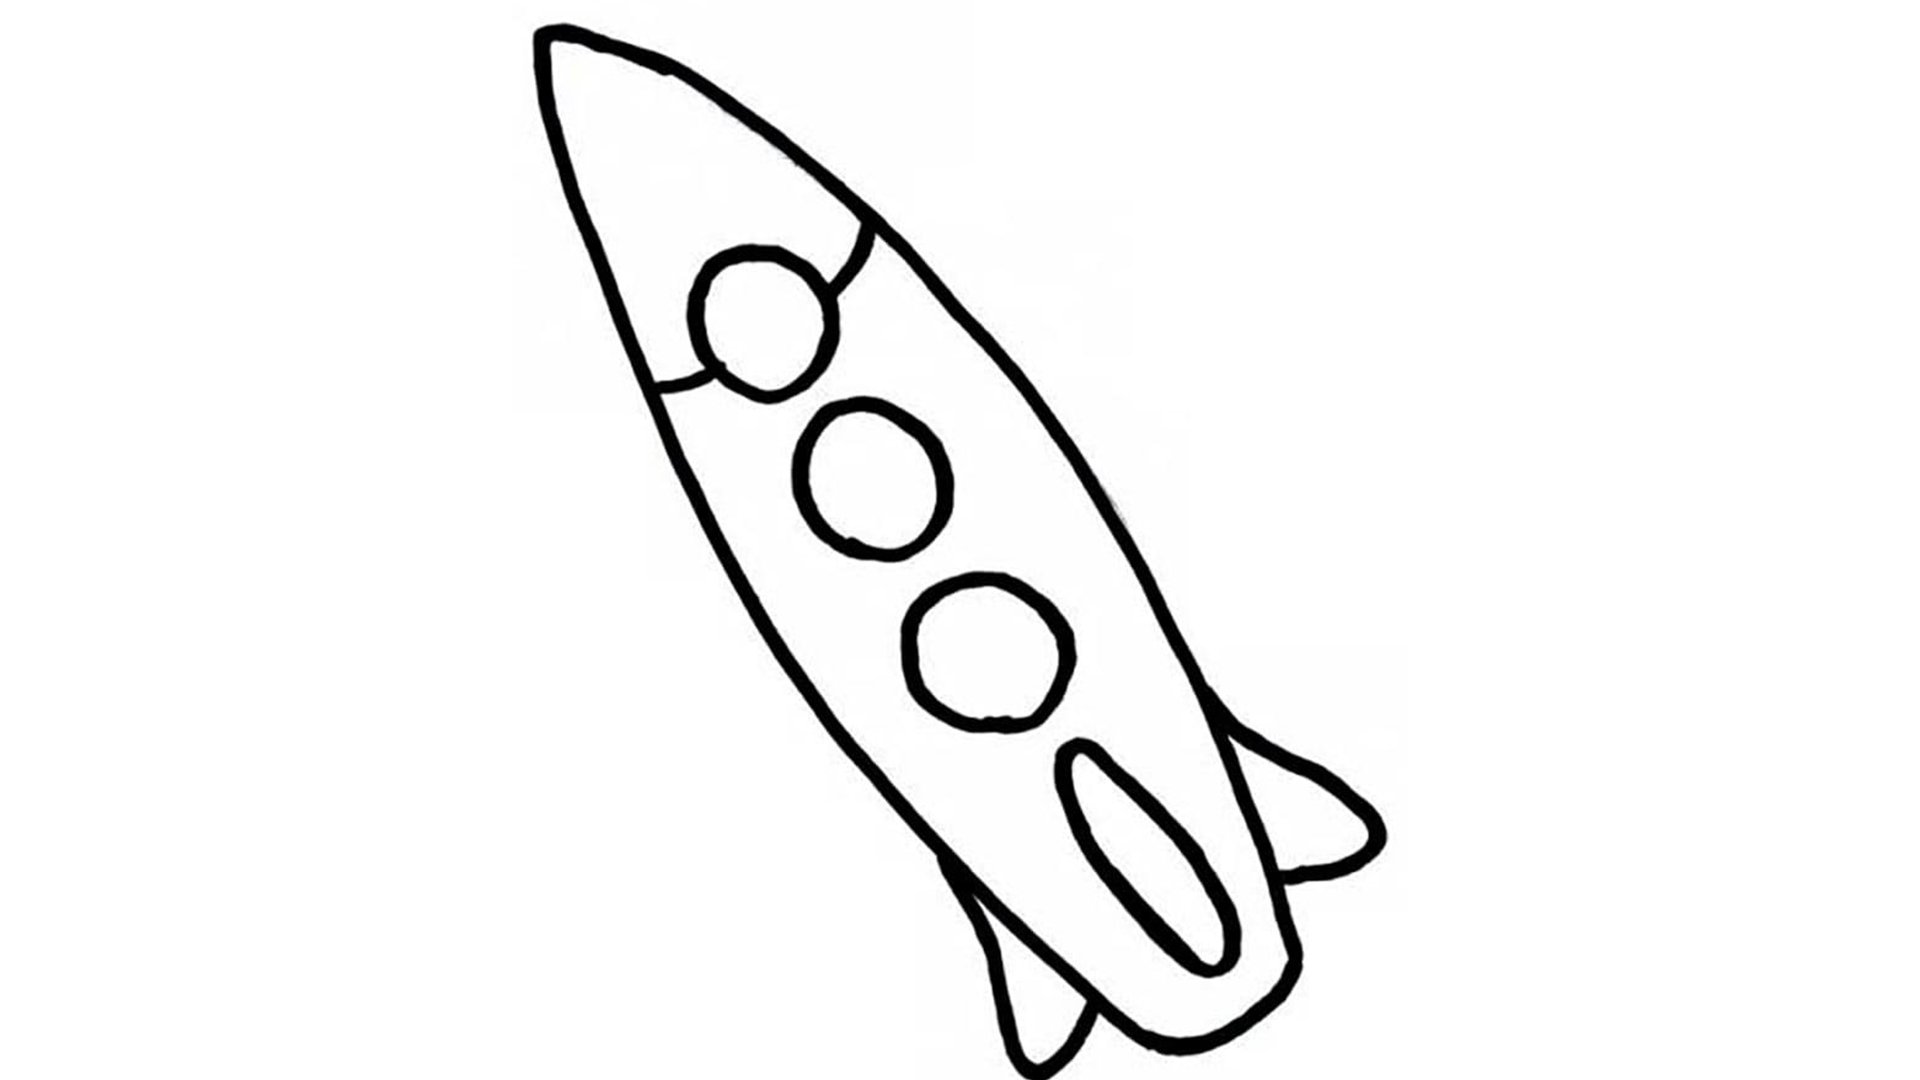 Ракета рисунок для детей 5 лет. Ракета рисунок. Раскраска ракета для детей 3-4 лет. Нарисовать ракету. Ракета картинка для детей.